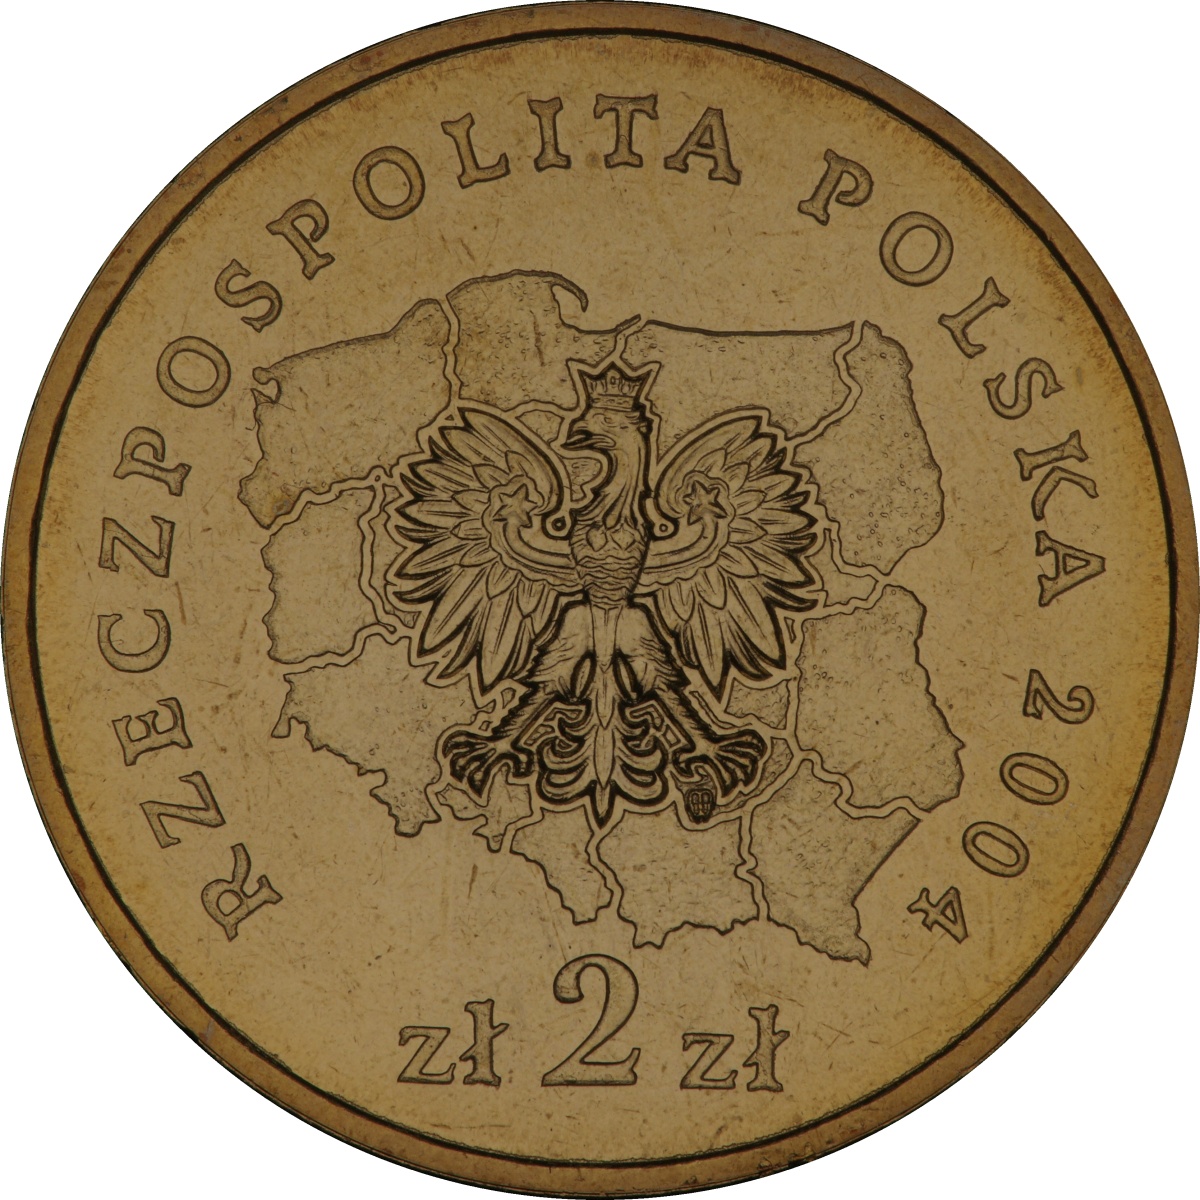 2zl-okolicznosciowe-wojewodztwo-opolskie-rewers-monety